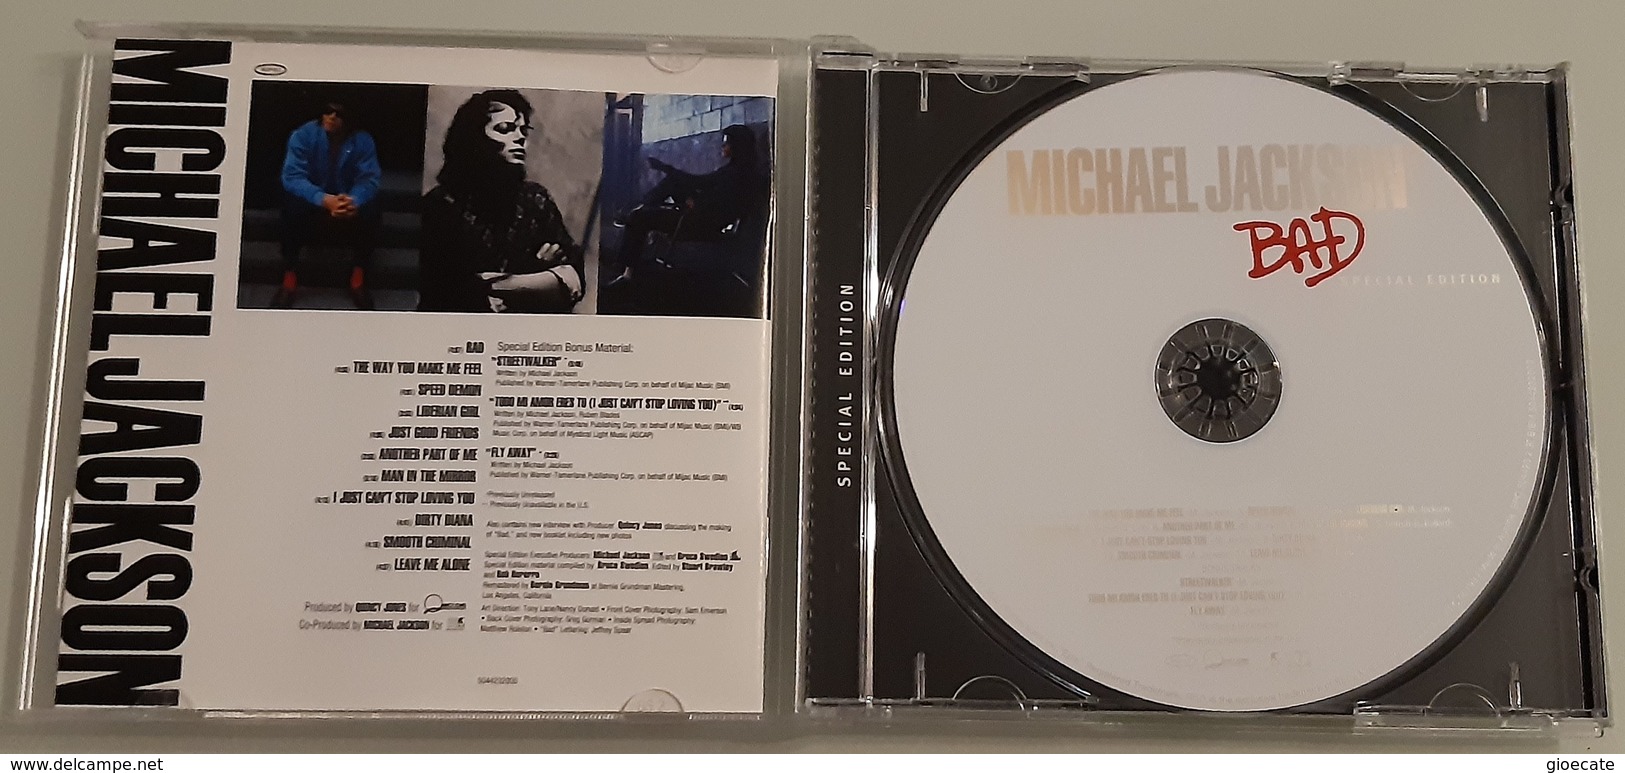 Michael Jackson - Bad - Special Edition - CD - Ottime Condizioni - Disco & Pop